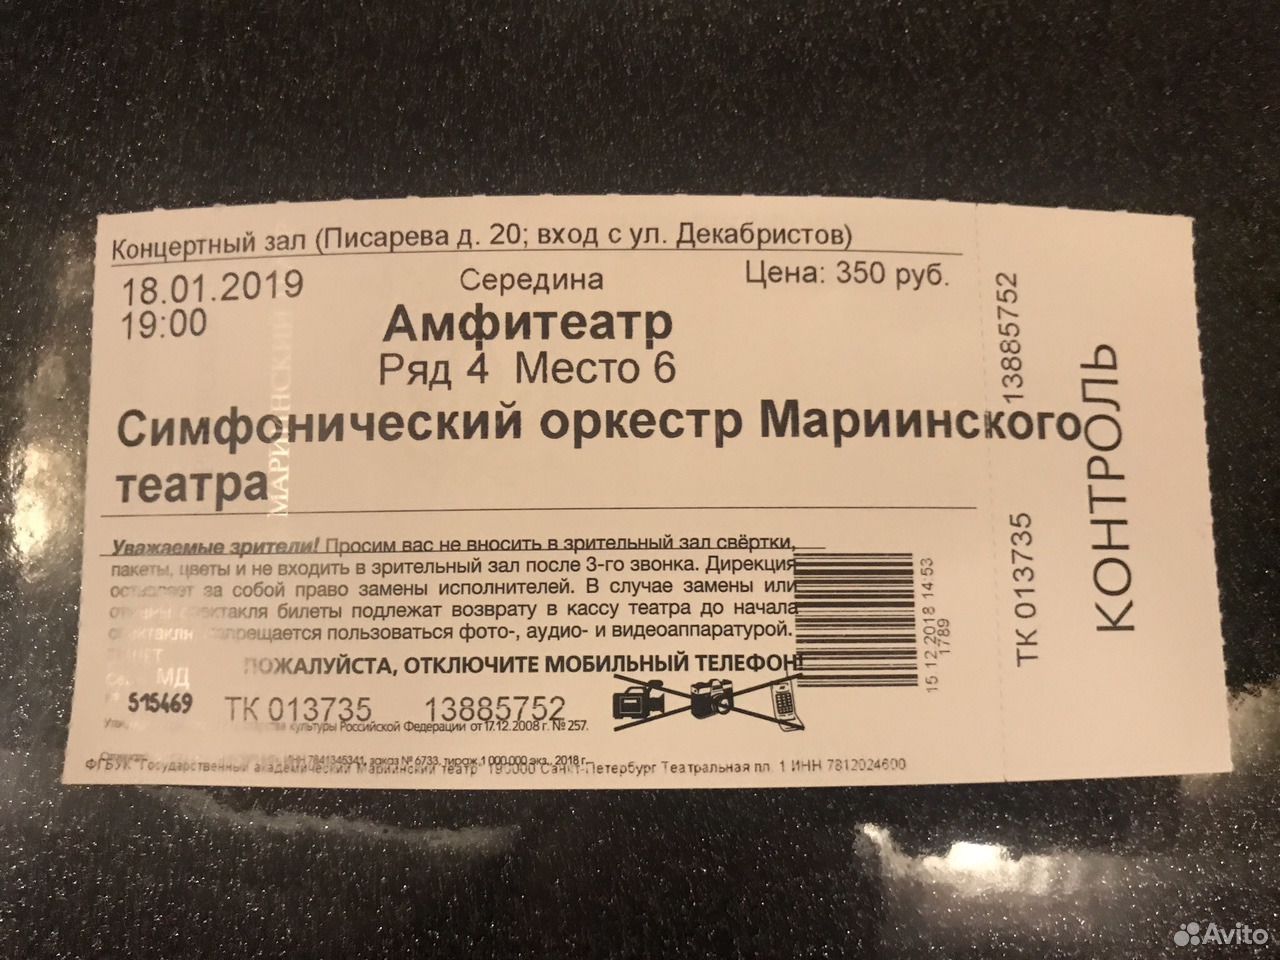 Купить билет на симфонический концерт. Билет на симфонический оркестр. Как выглядит билет на концерт. Пригласительные билеты на концерт симфонического оркестра. Старый билет на симфонический оркестр.